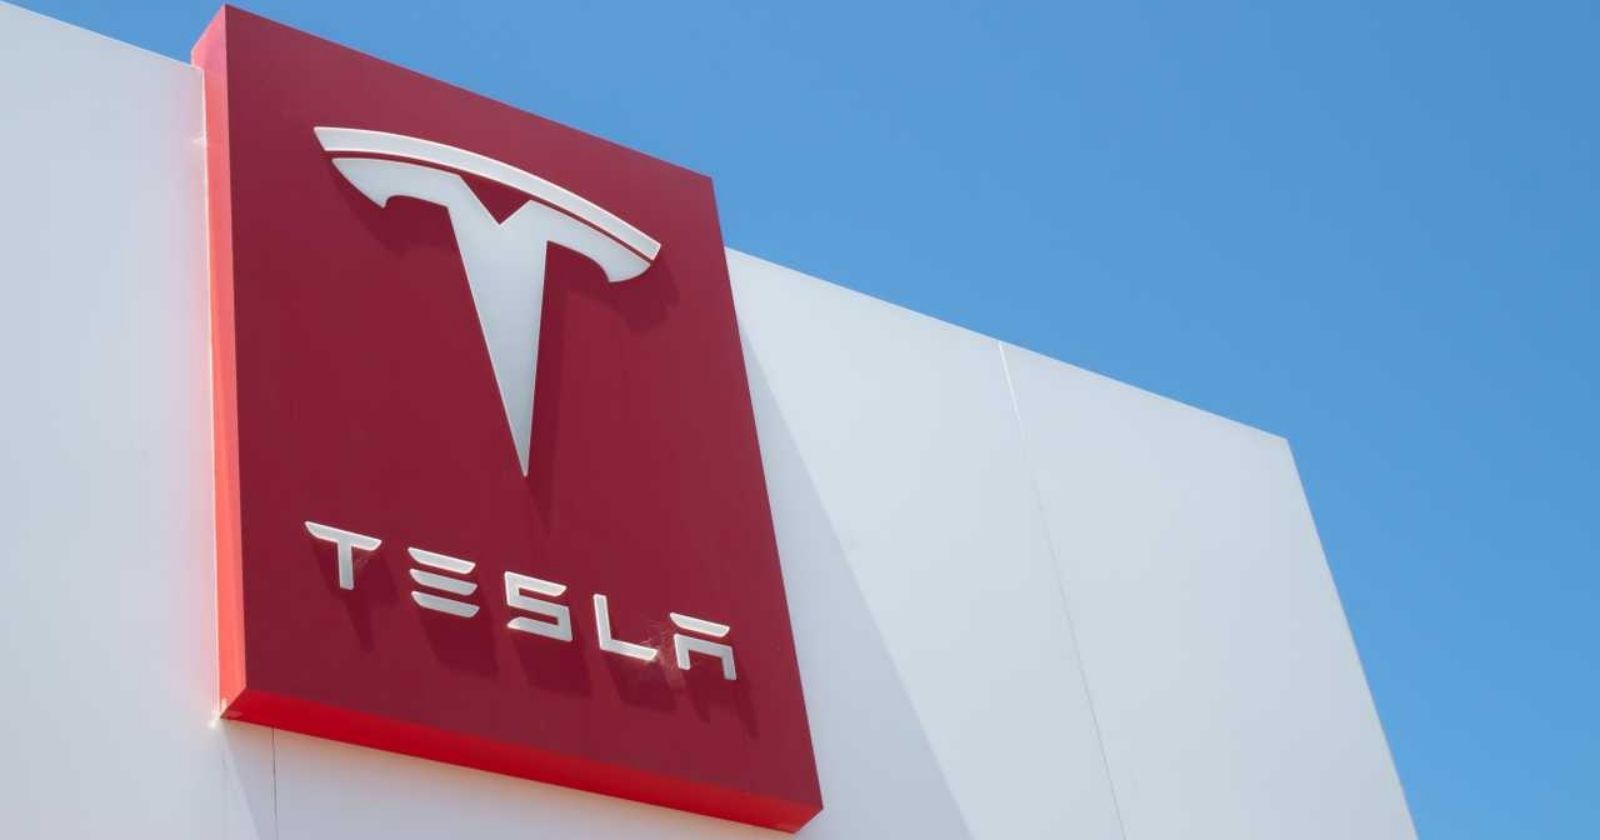 Beklendiği gibi olmadı Tesla'nın finansal sonuçları açıklandı!